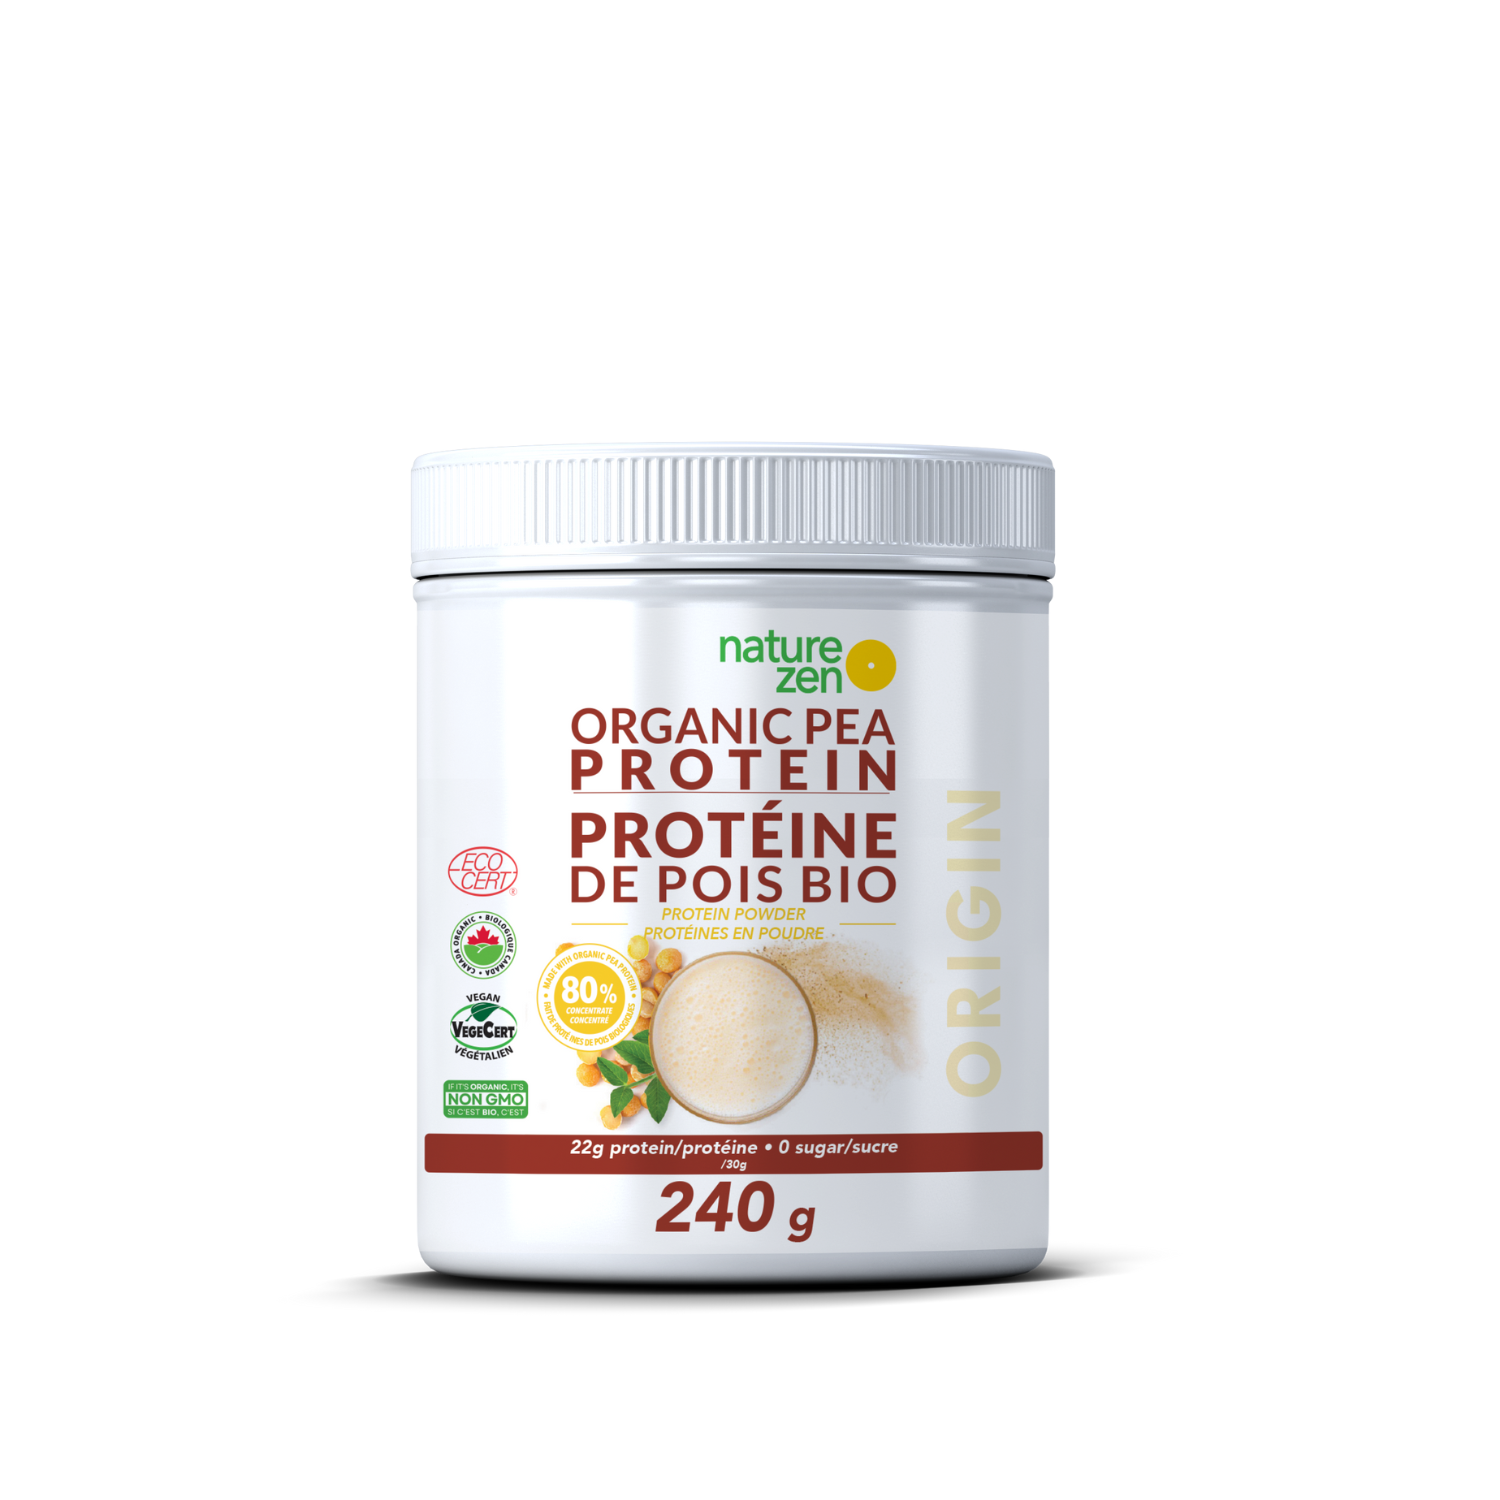 Nature Zen - Organic Pea Protein Powder